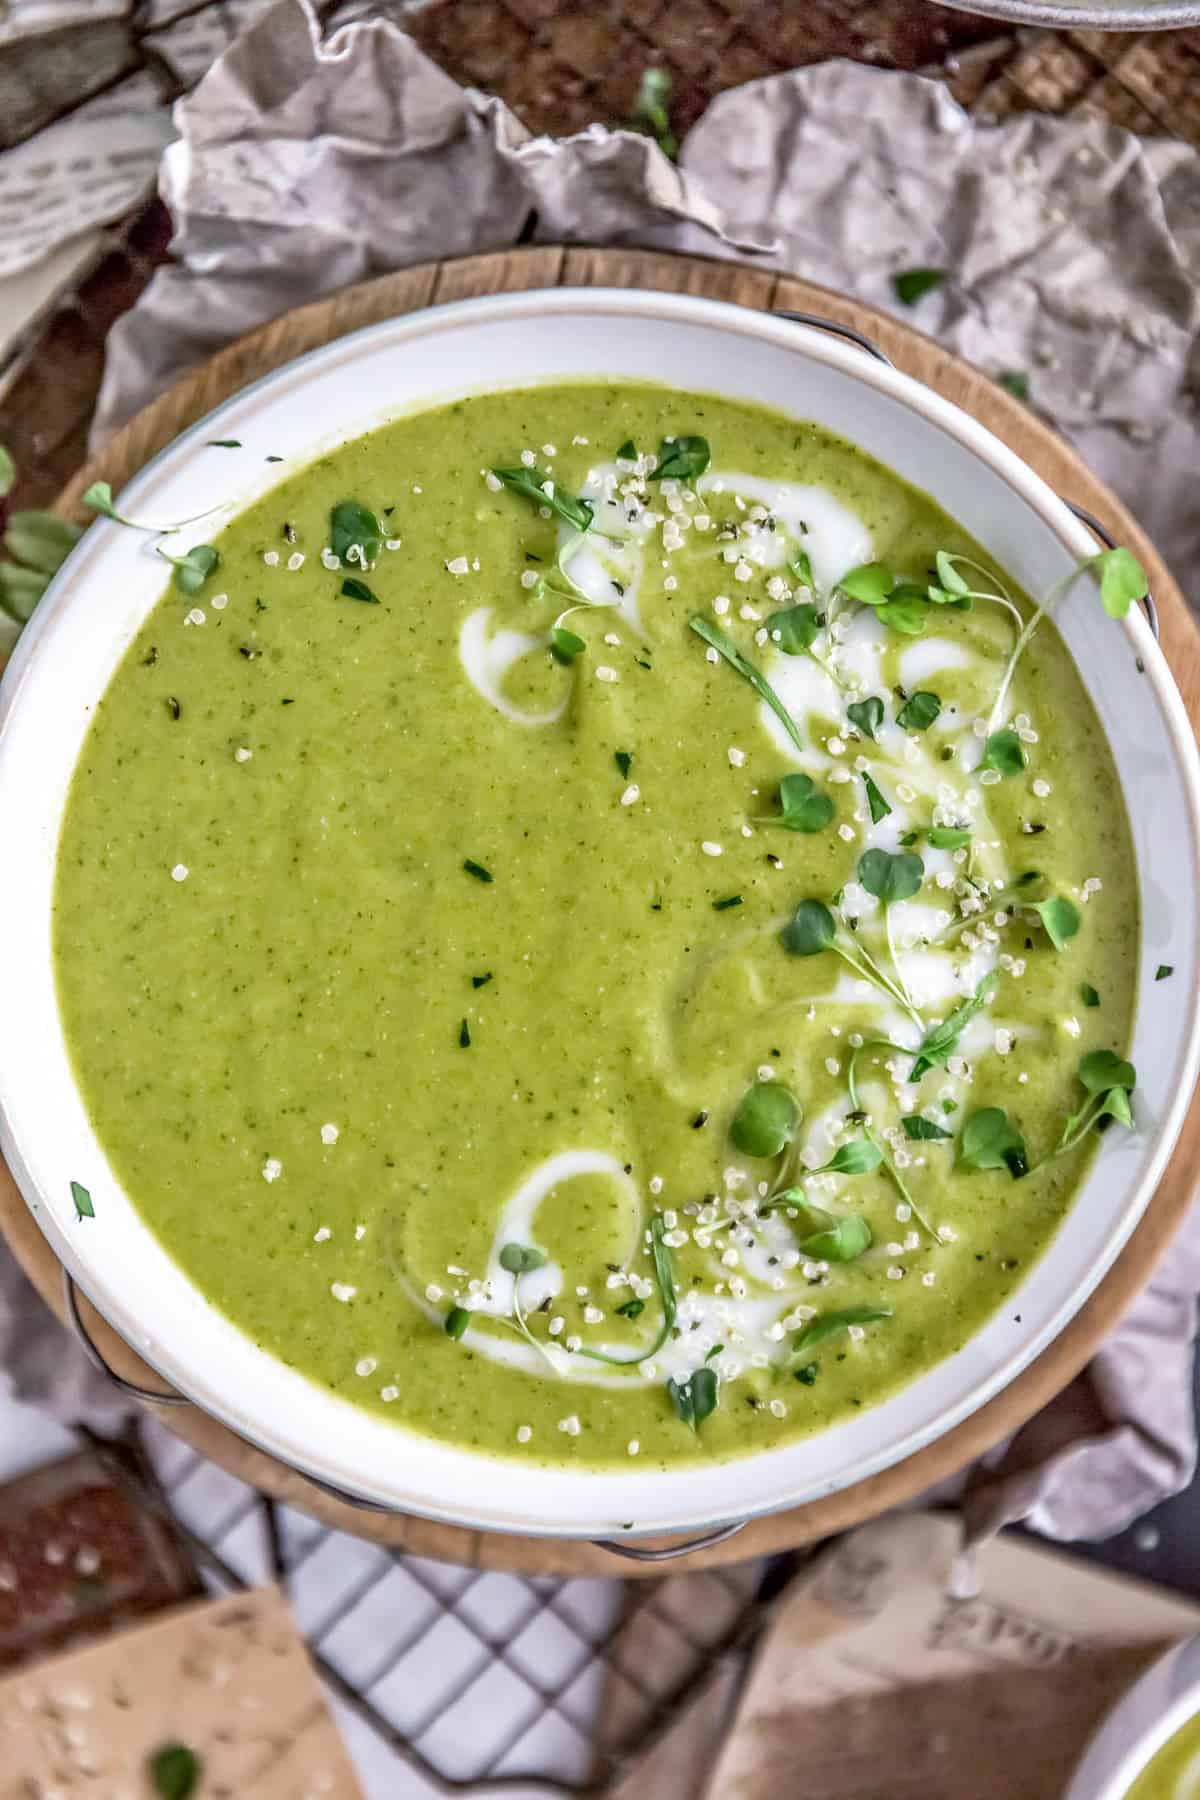 Healing Green Soup